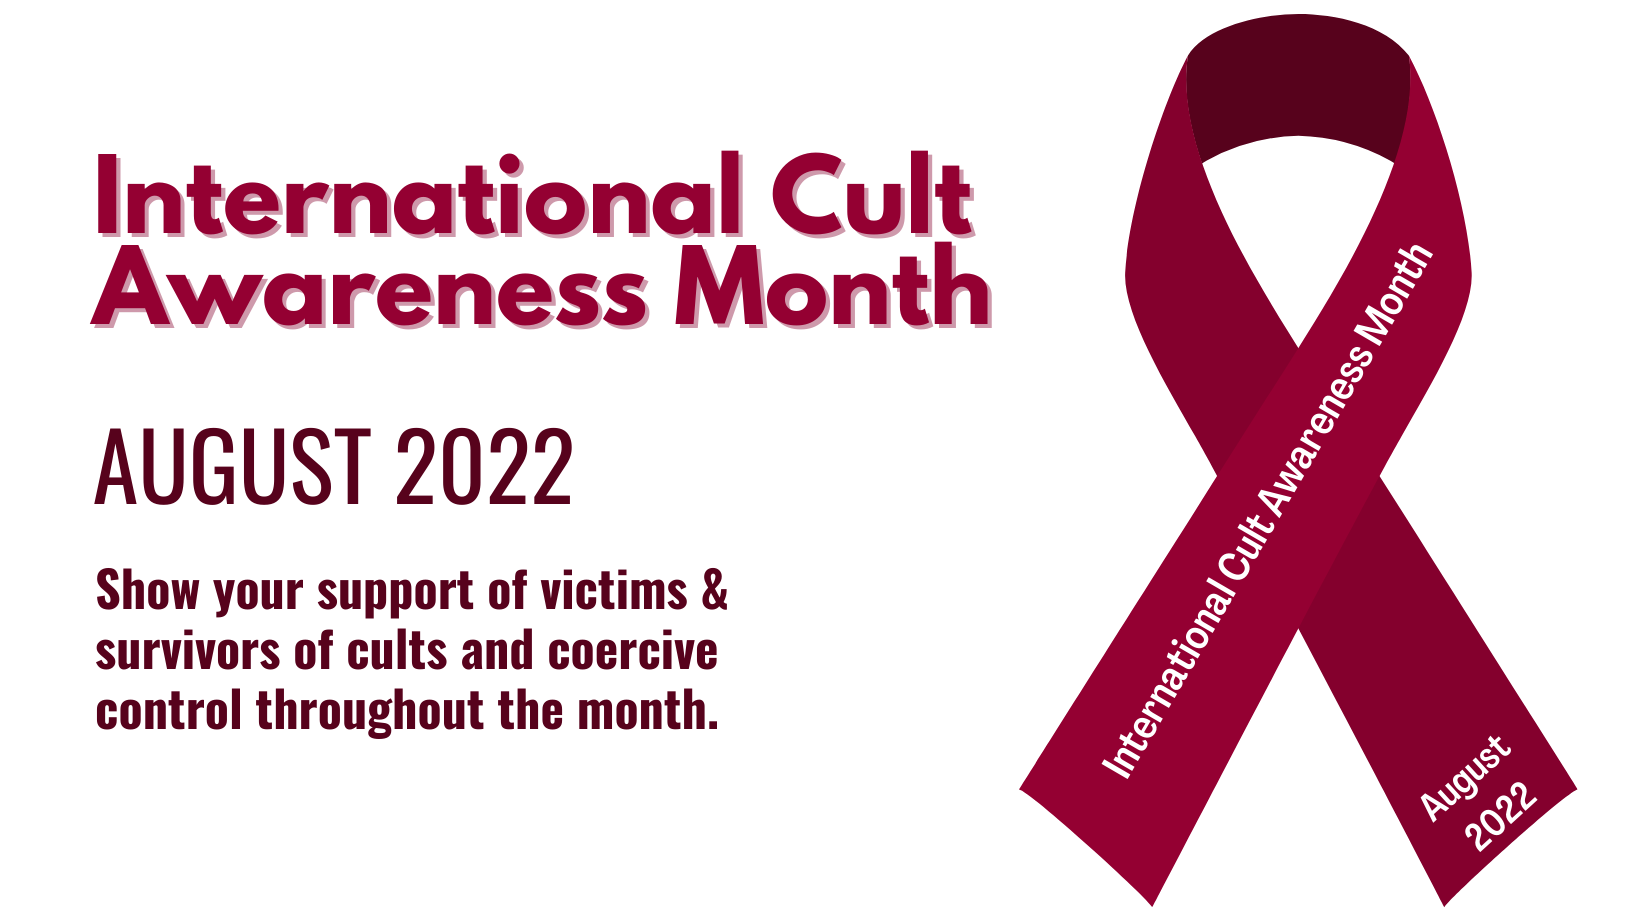 International Cult Awareness Month